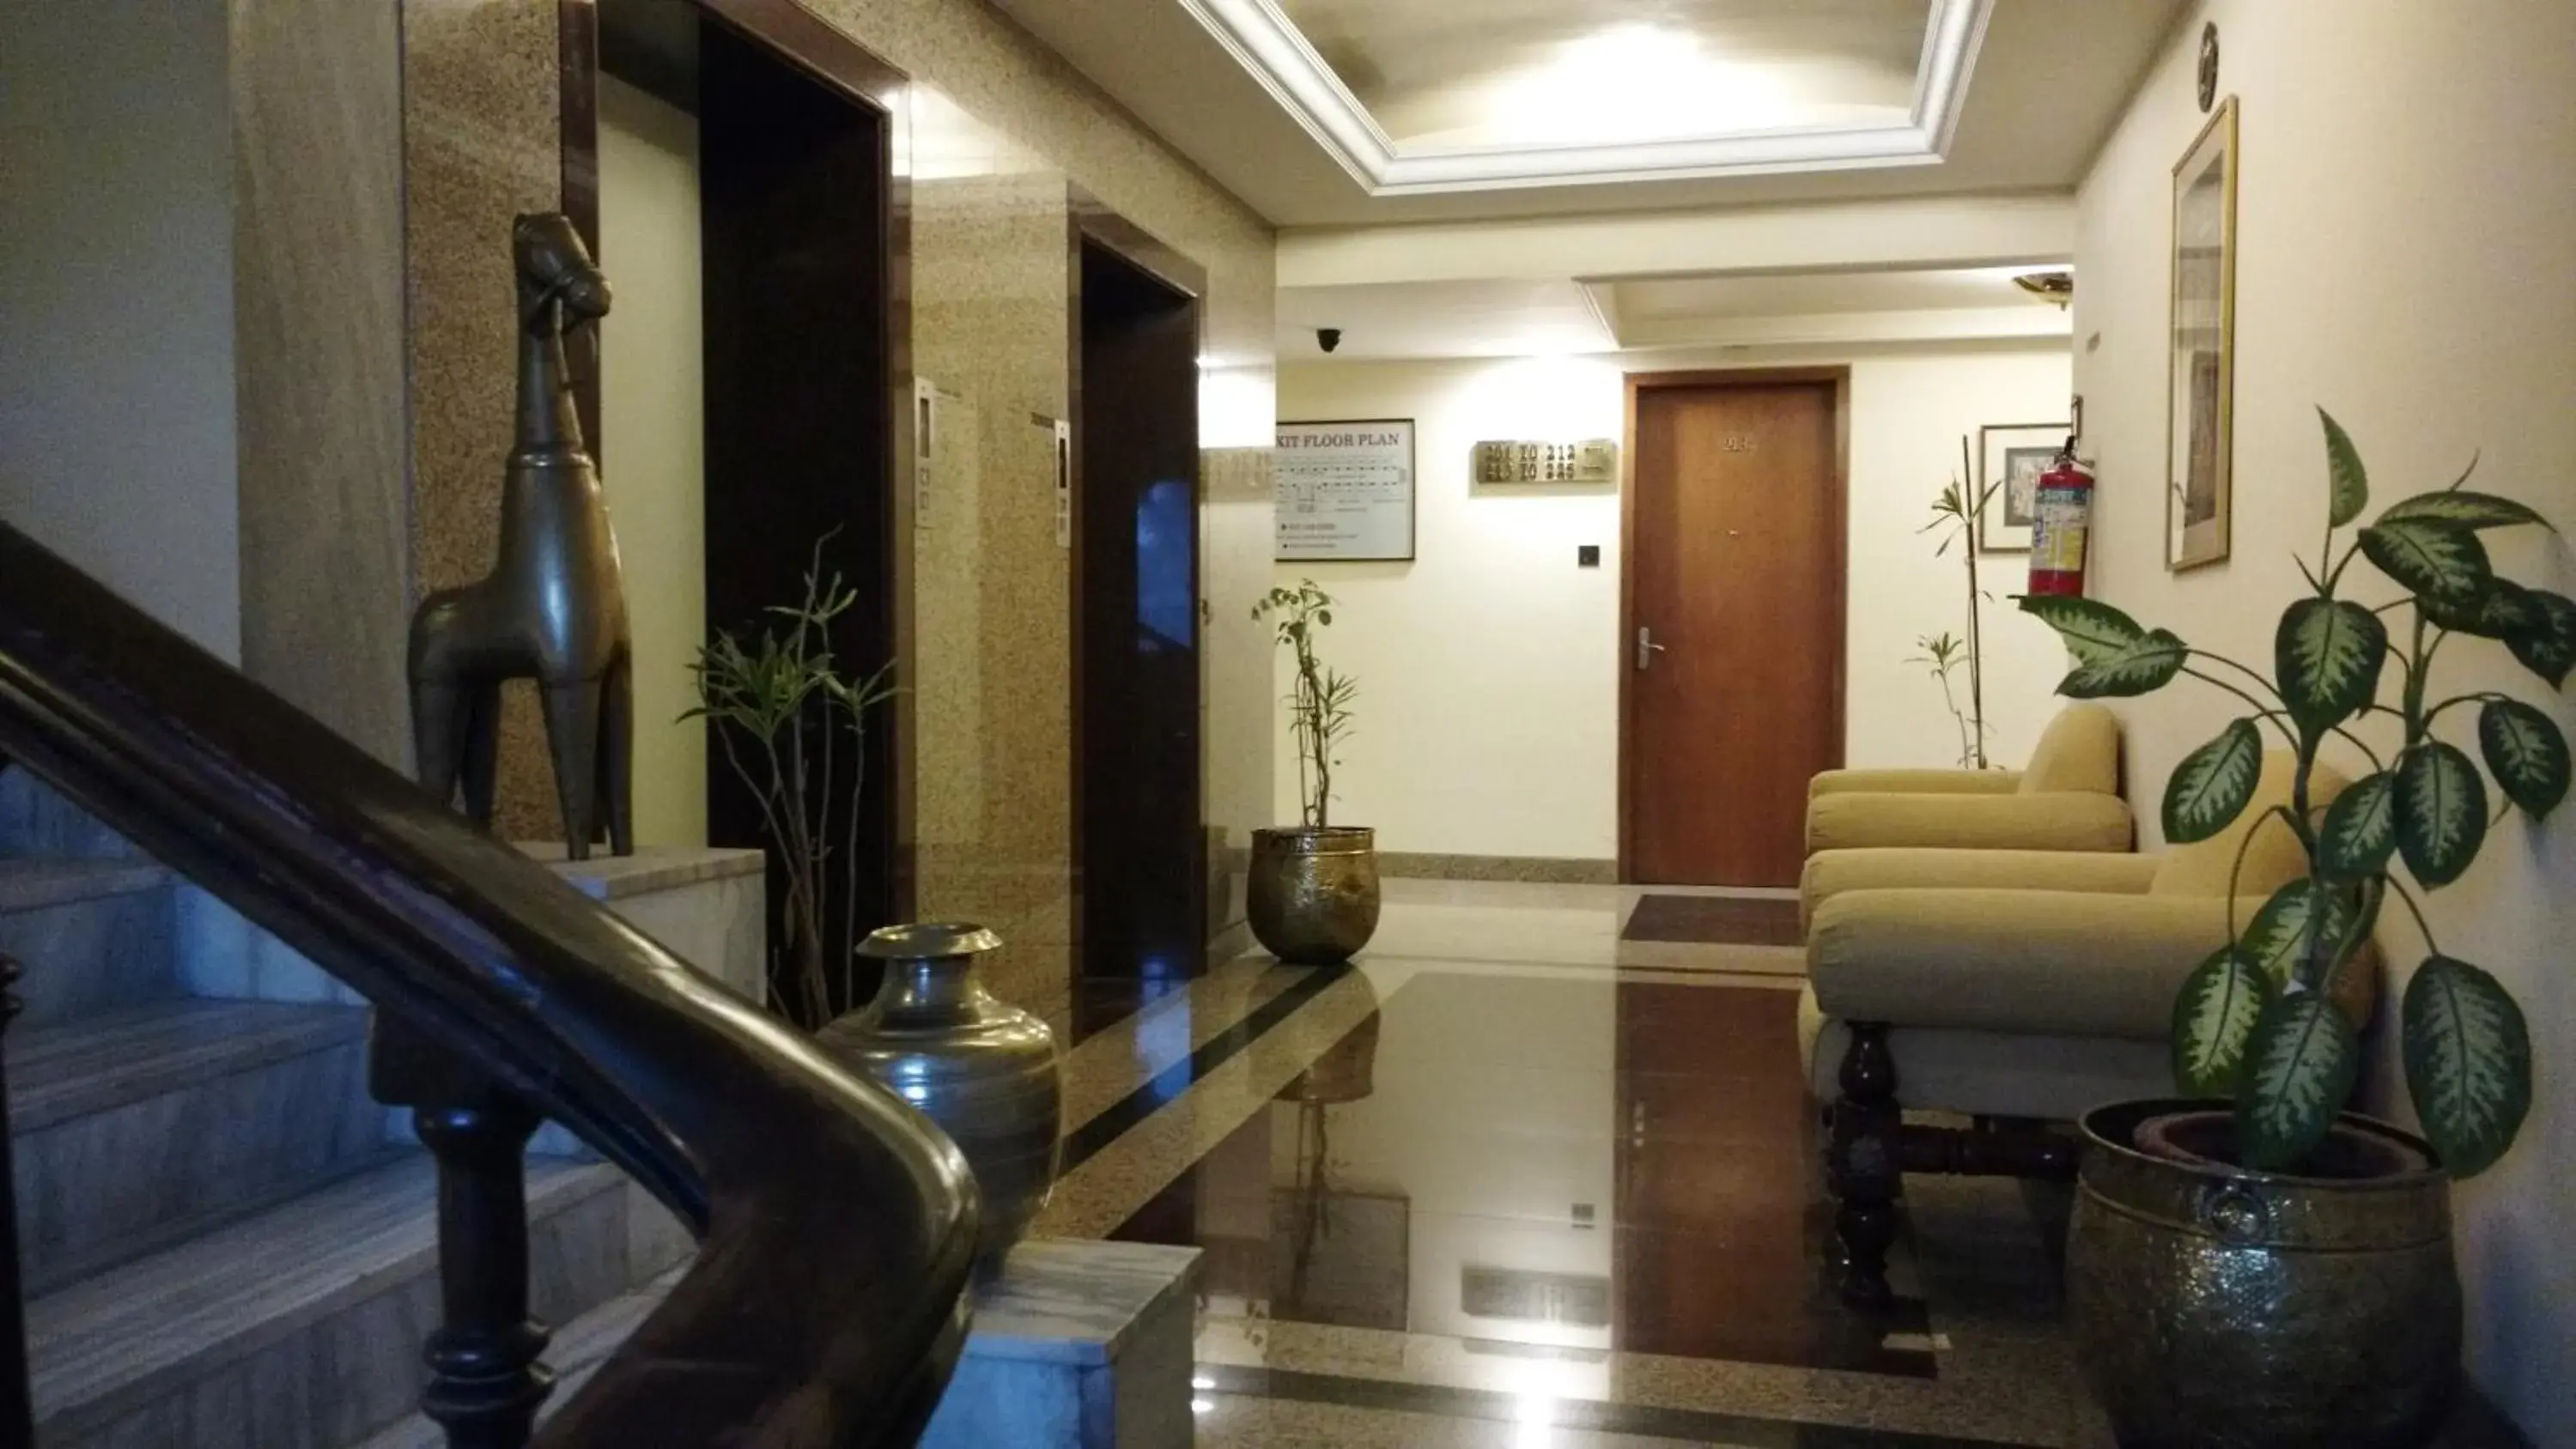 Area and facilities, Lobby/Reception in The Ambassador Ajanta